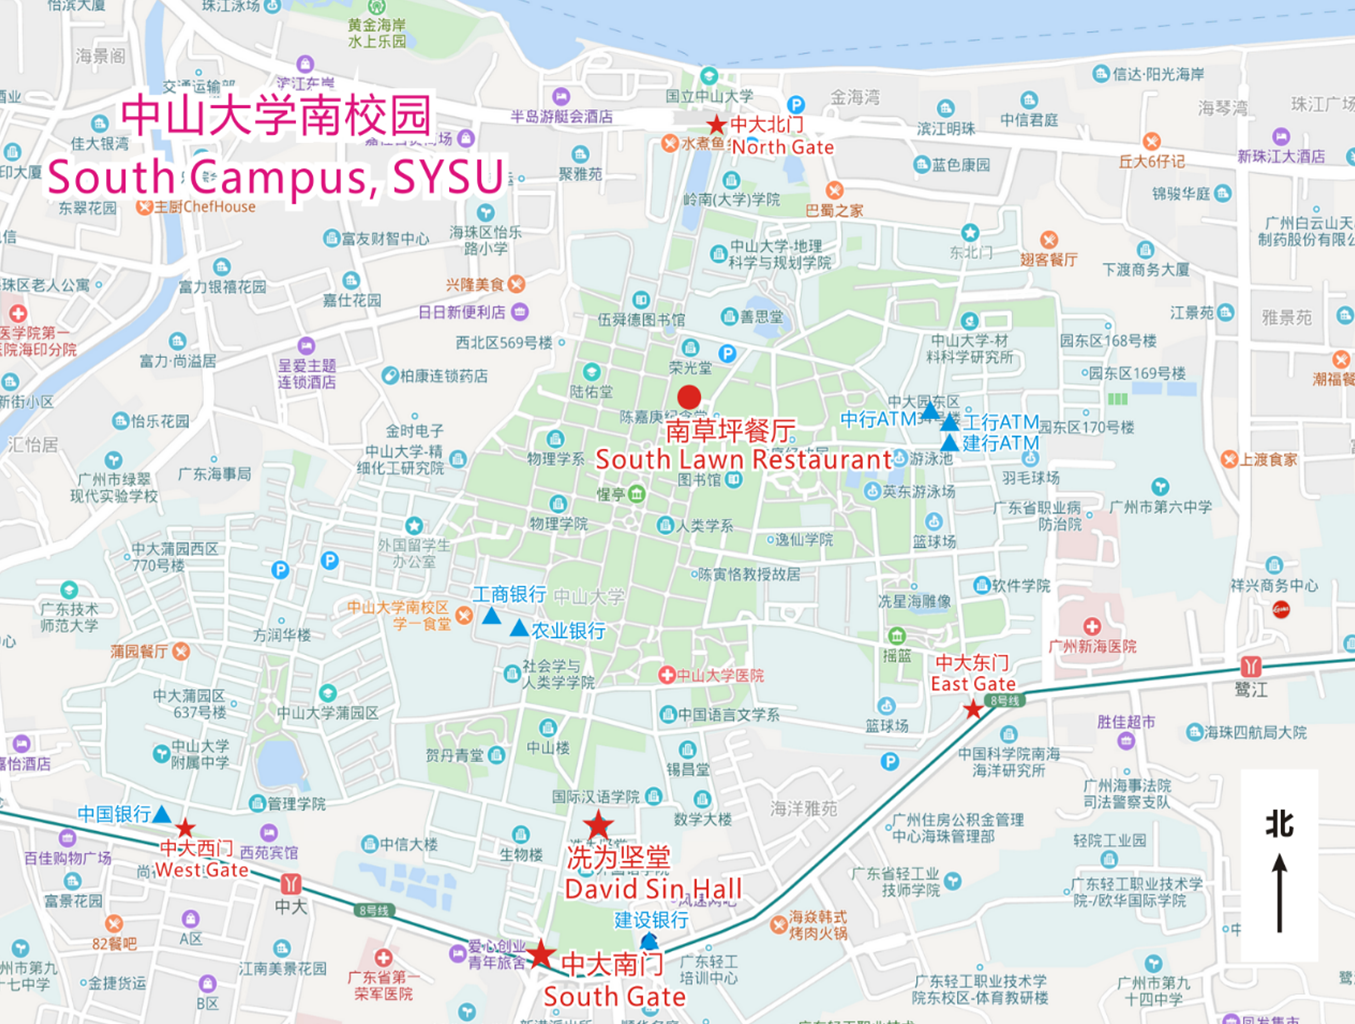 Map of SYSU campus